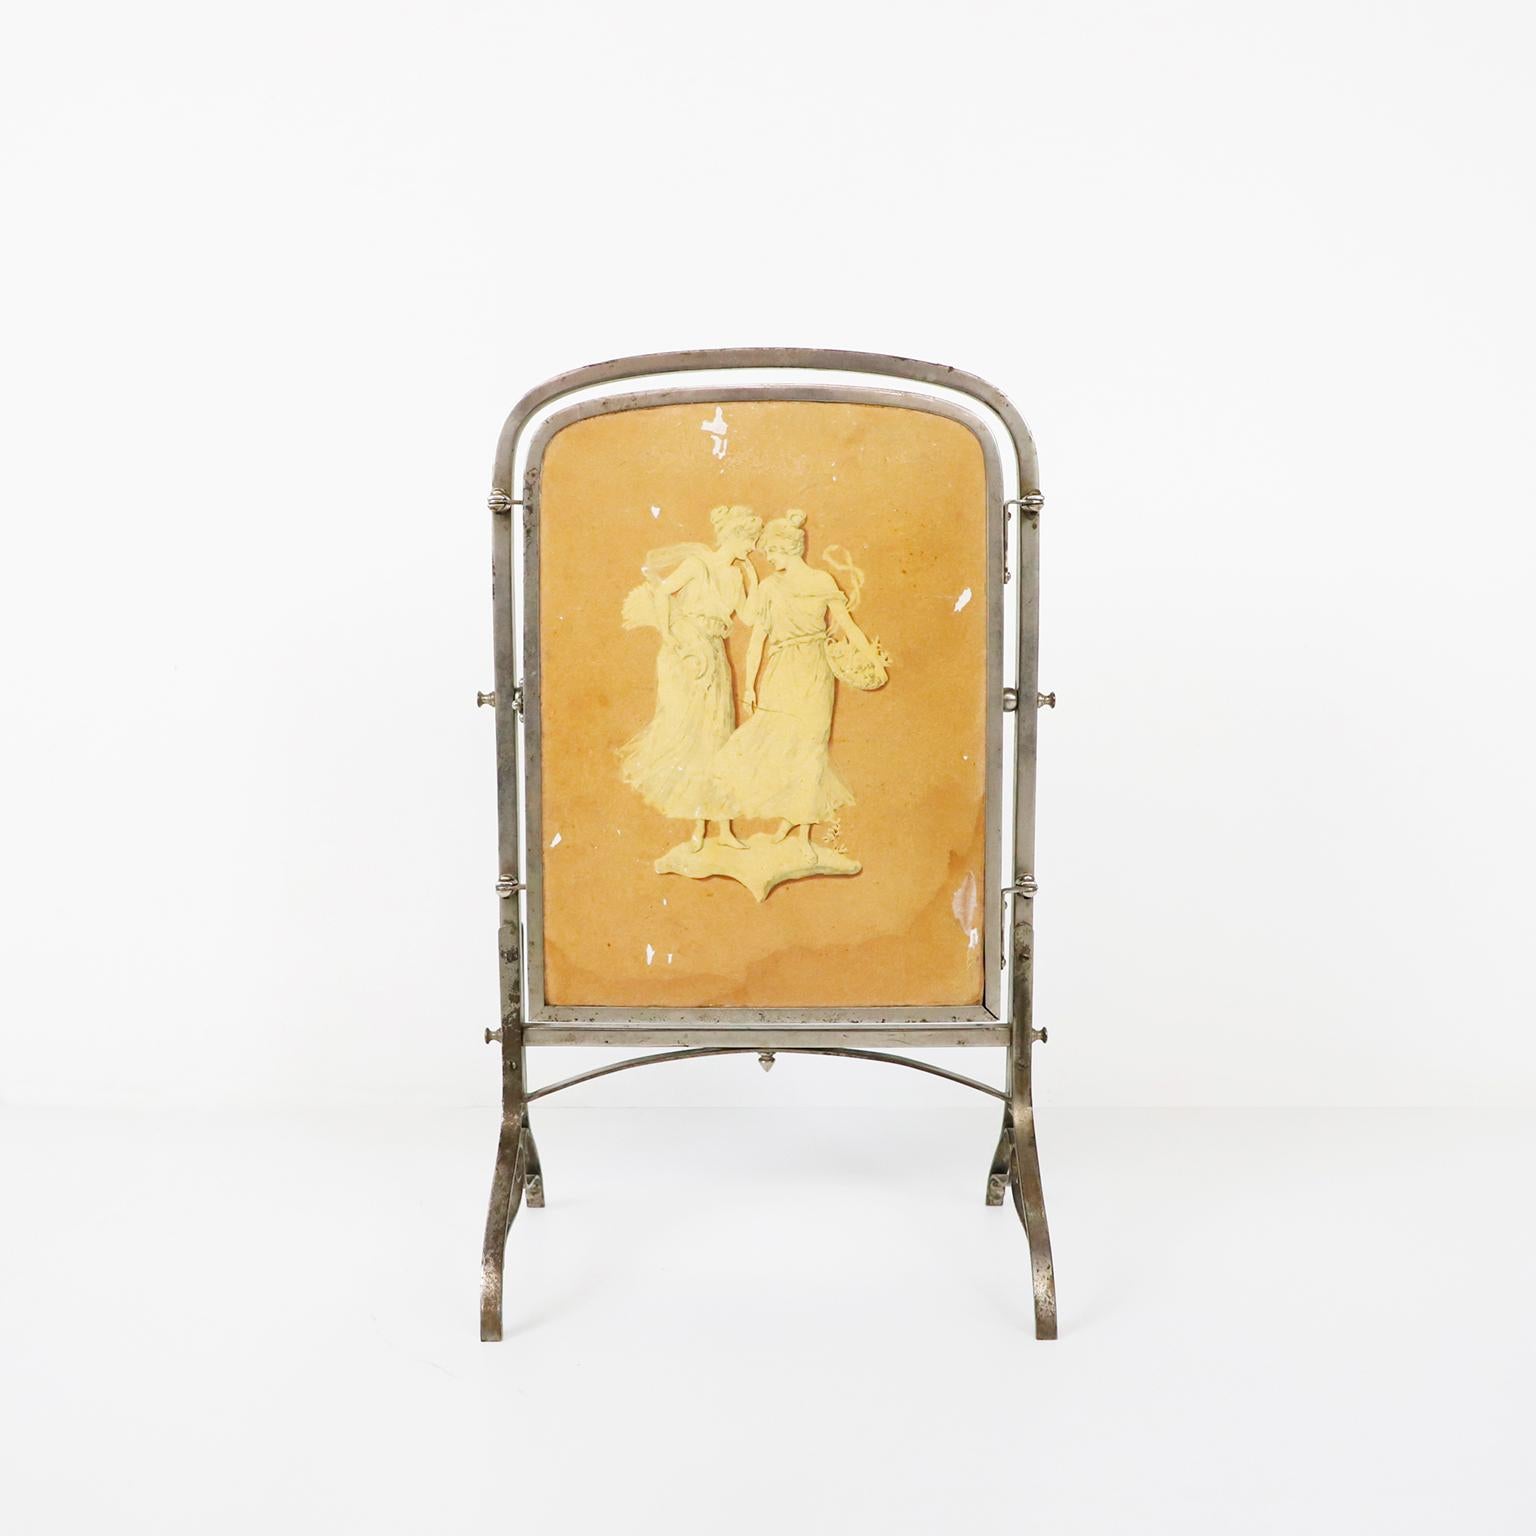 Ca. 1940. Wir bieten diese antike Französisch Jugendstil Vanity Mirror, fantastische Patina und Original-Spiegel.